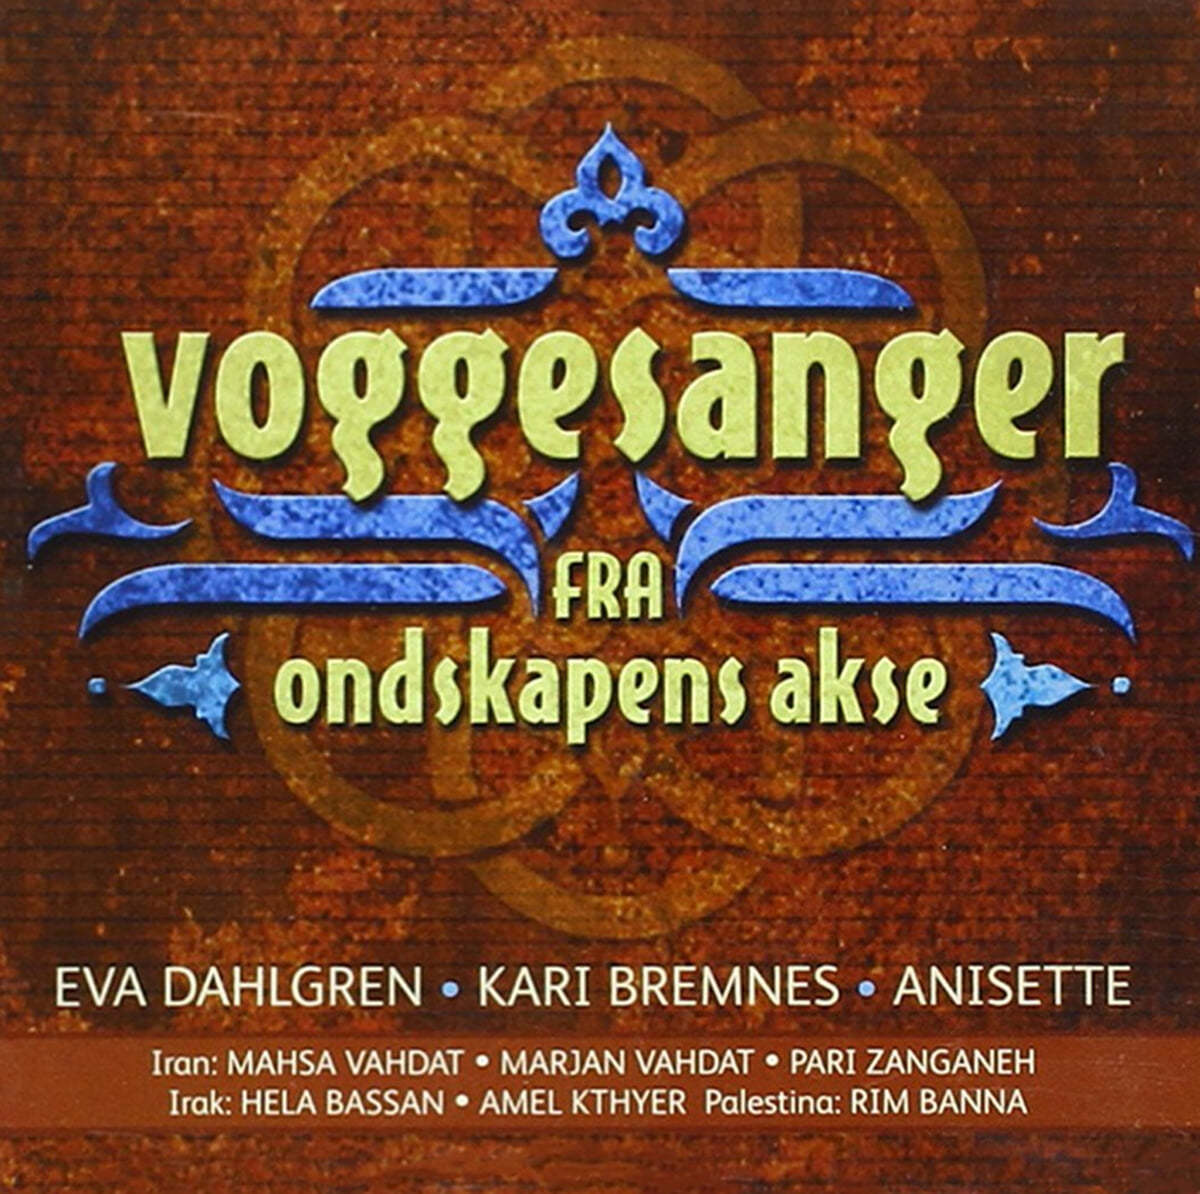 악의 축에서 들려오는 다섯 곡의 자장가 (Voggesanger Fra Ondskapens Akse) 